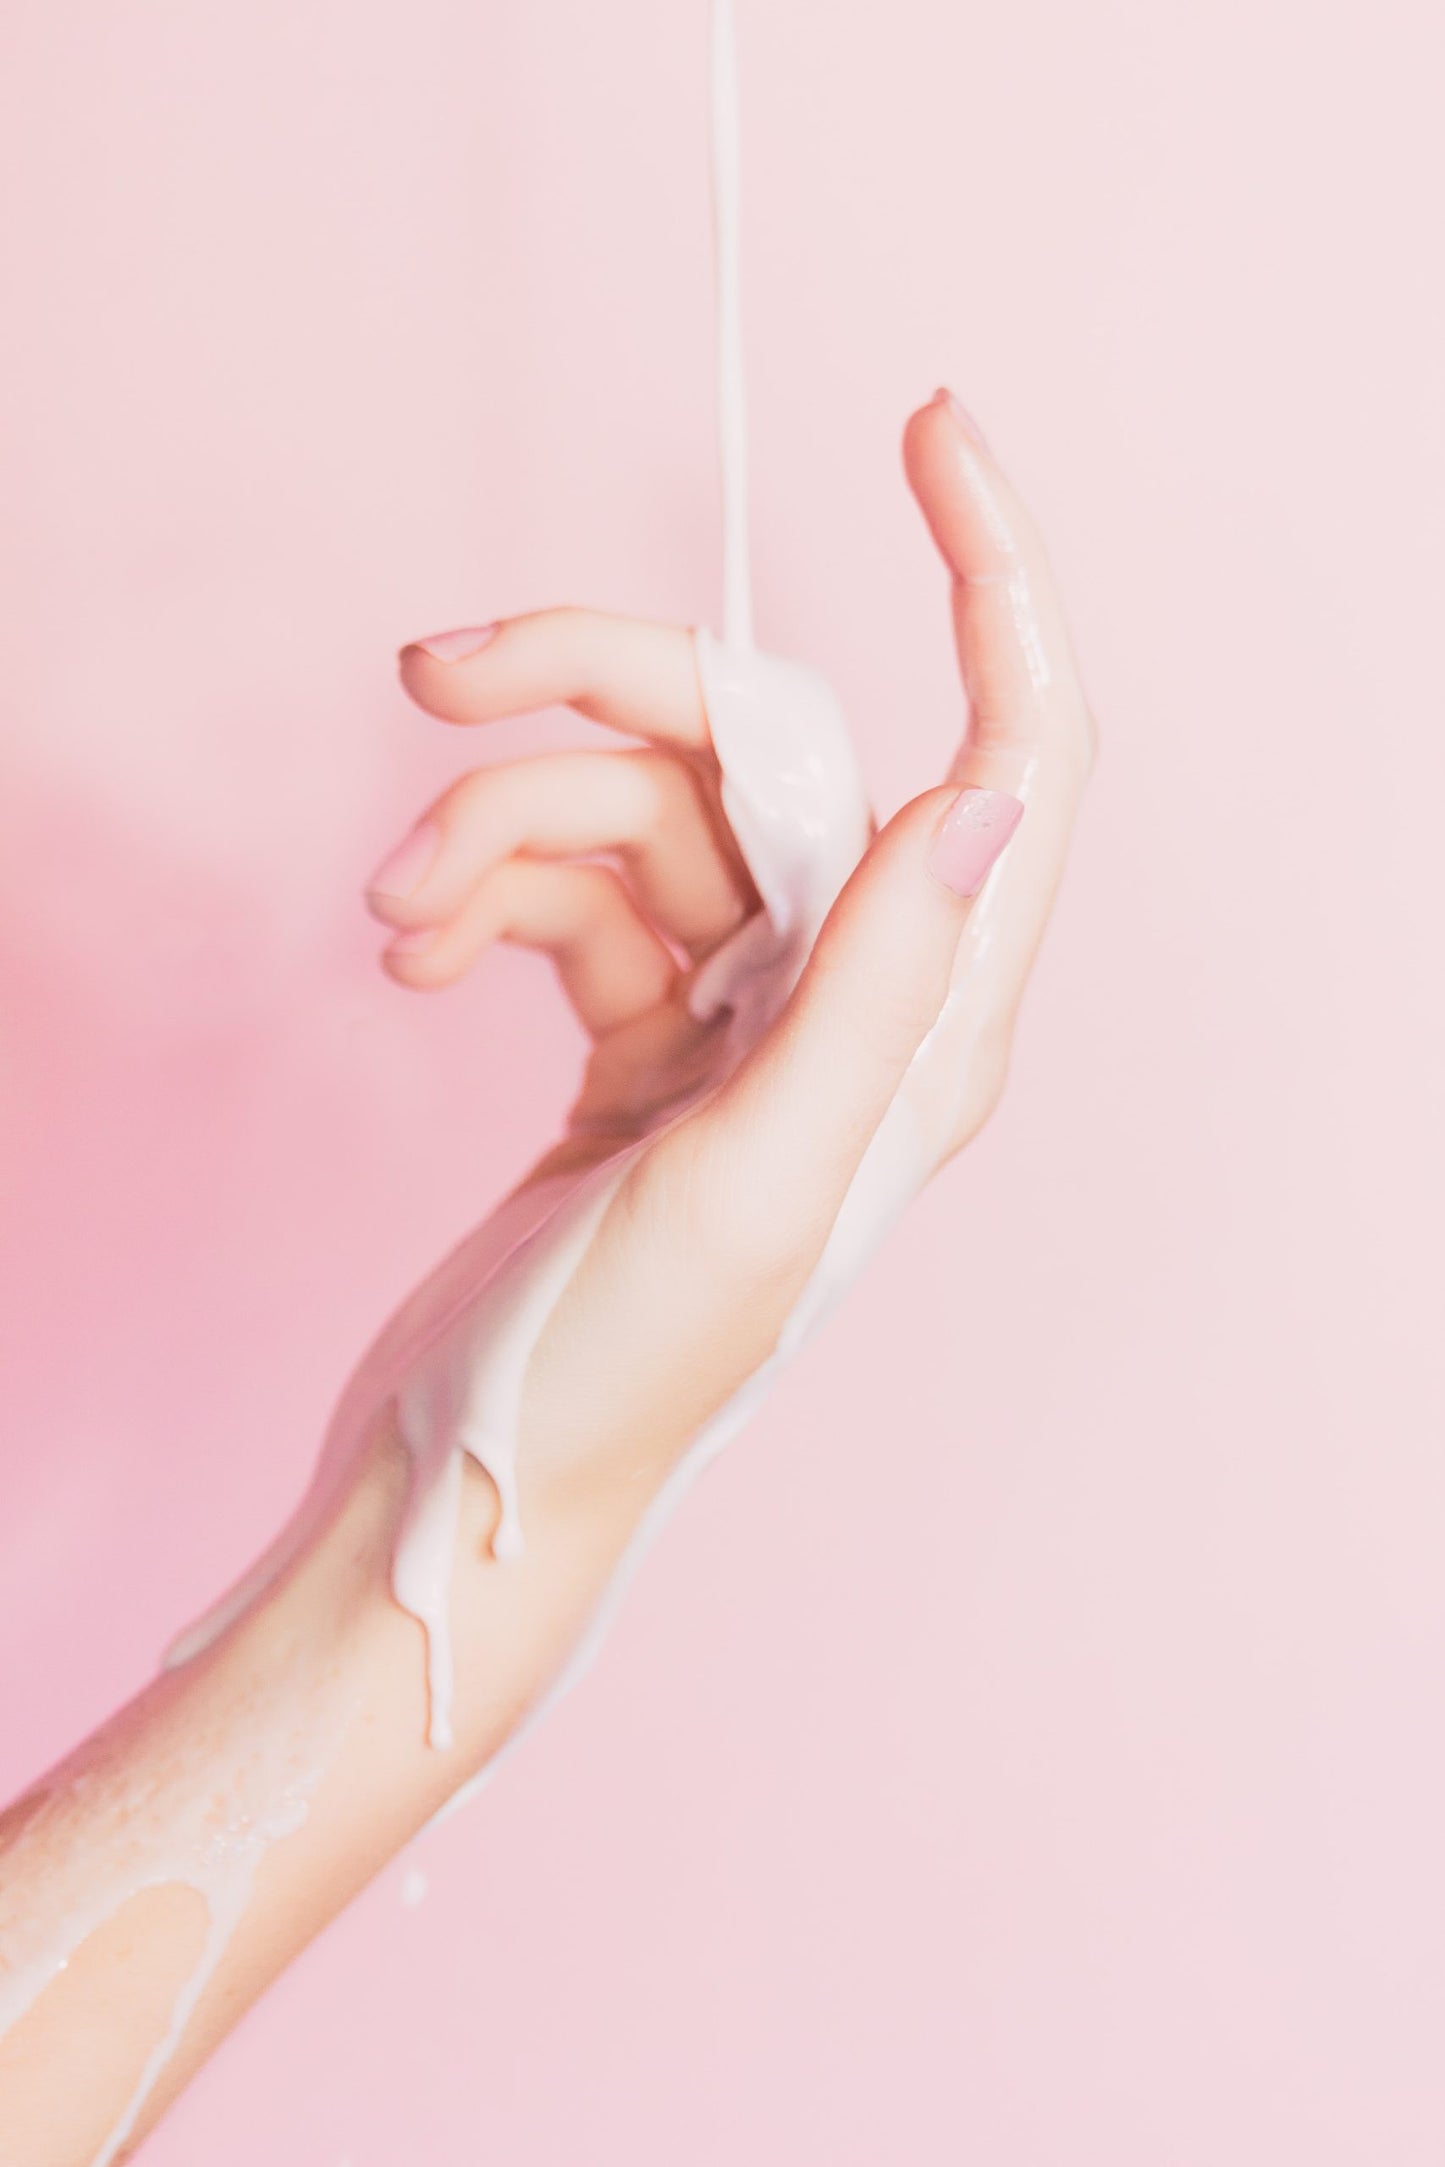 Frauenhand auf rosafarbenen Hintergrund mit cremigen Schleim Flüssigkeit auf Hand